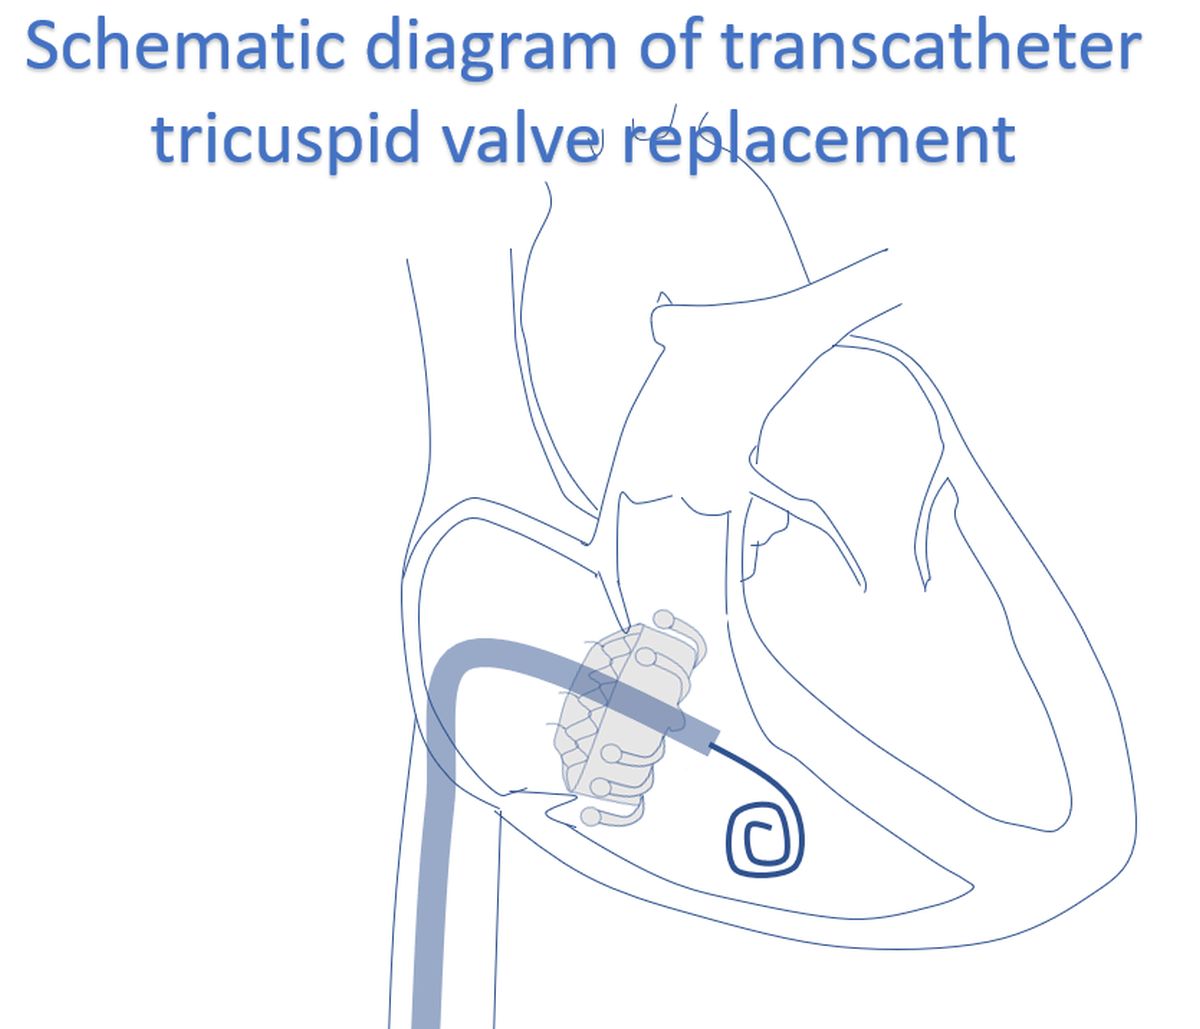 Schematic diagram of transcatheter tricuspid valve replacement